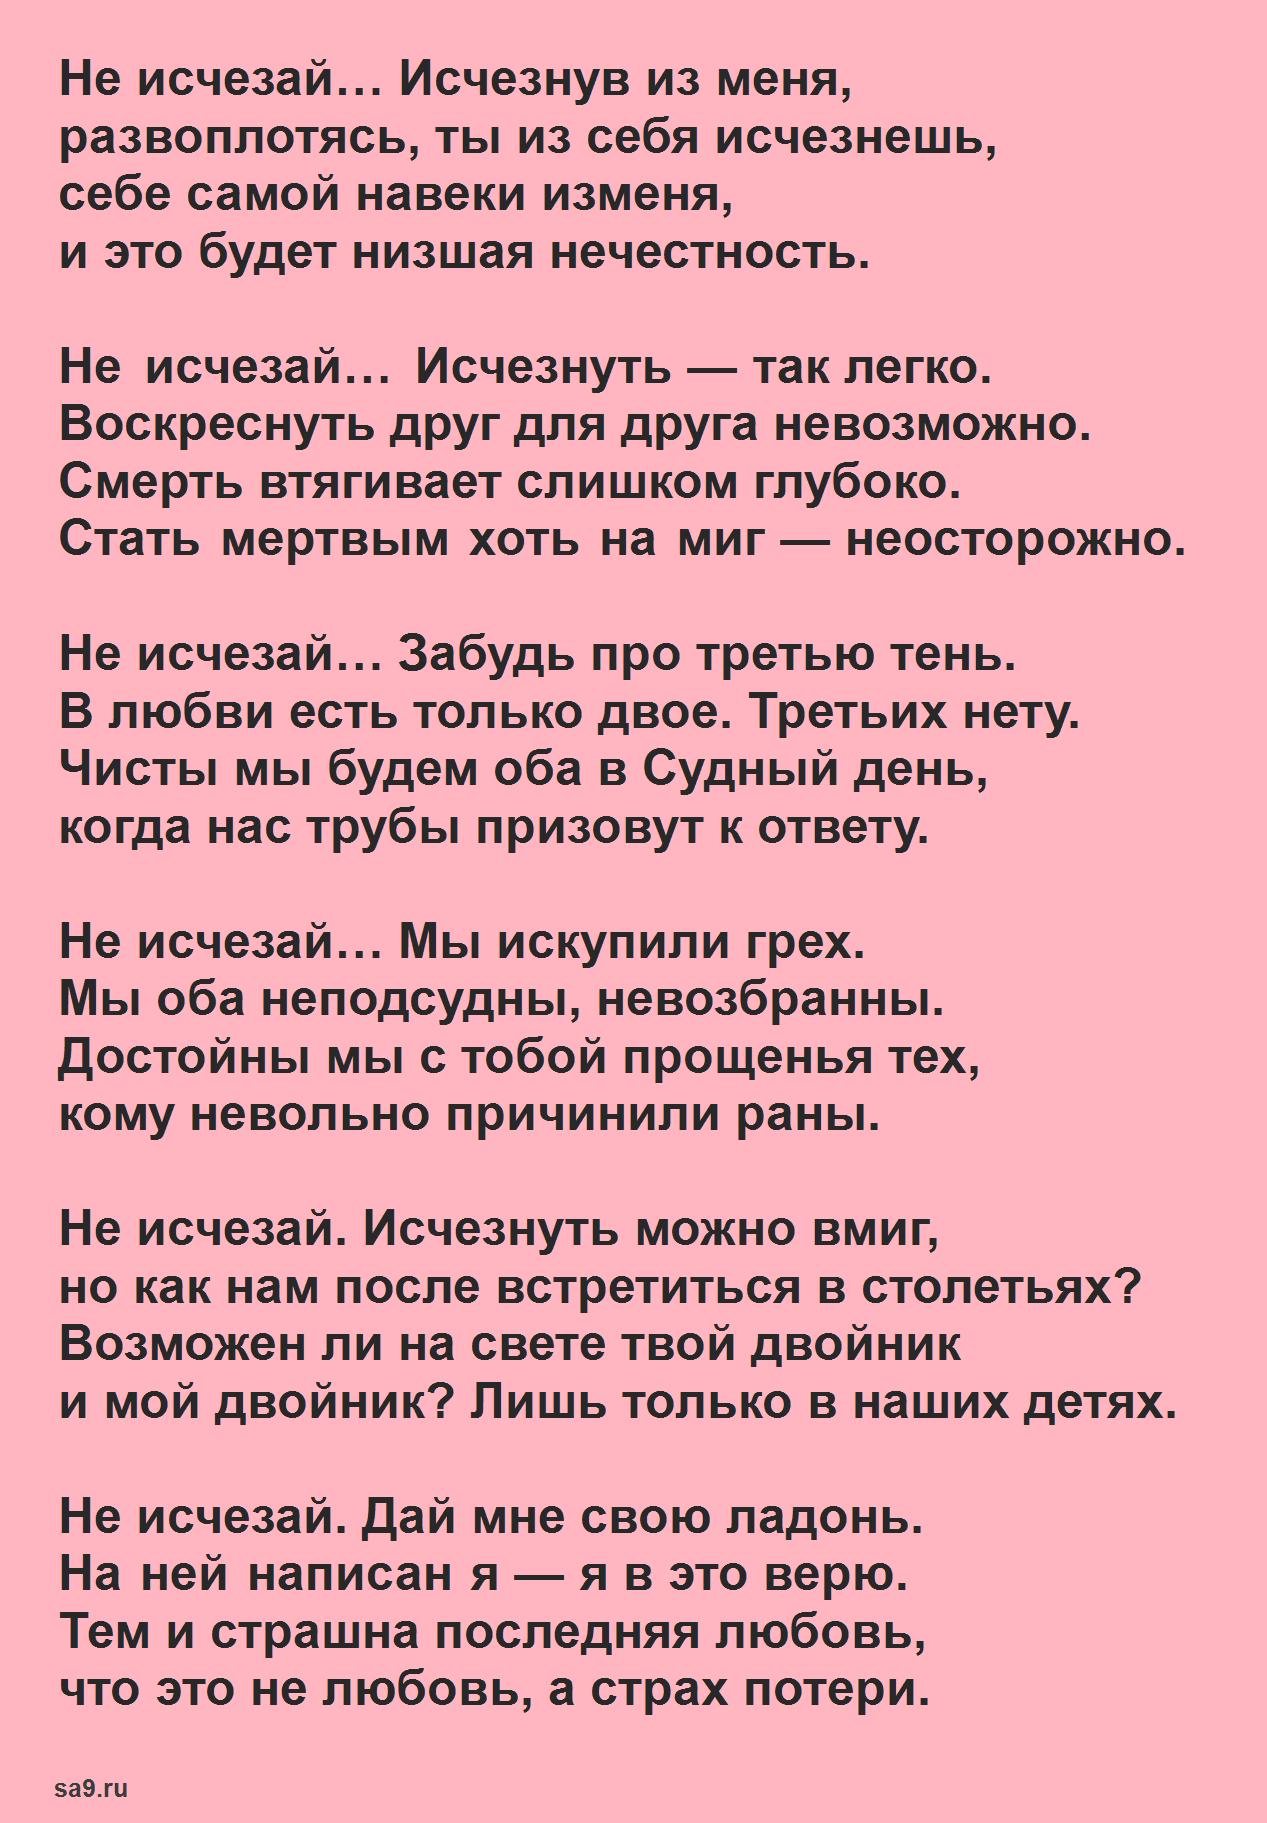 Евтушенко легкие стихи - Не исчезай исчезнув из меня